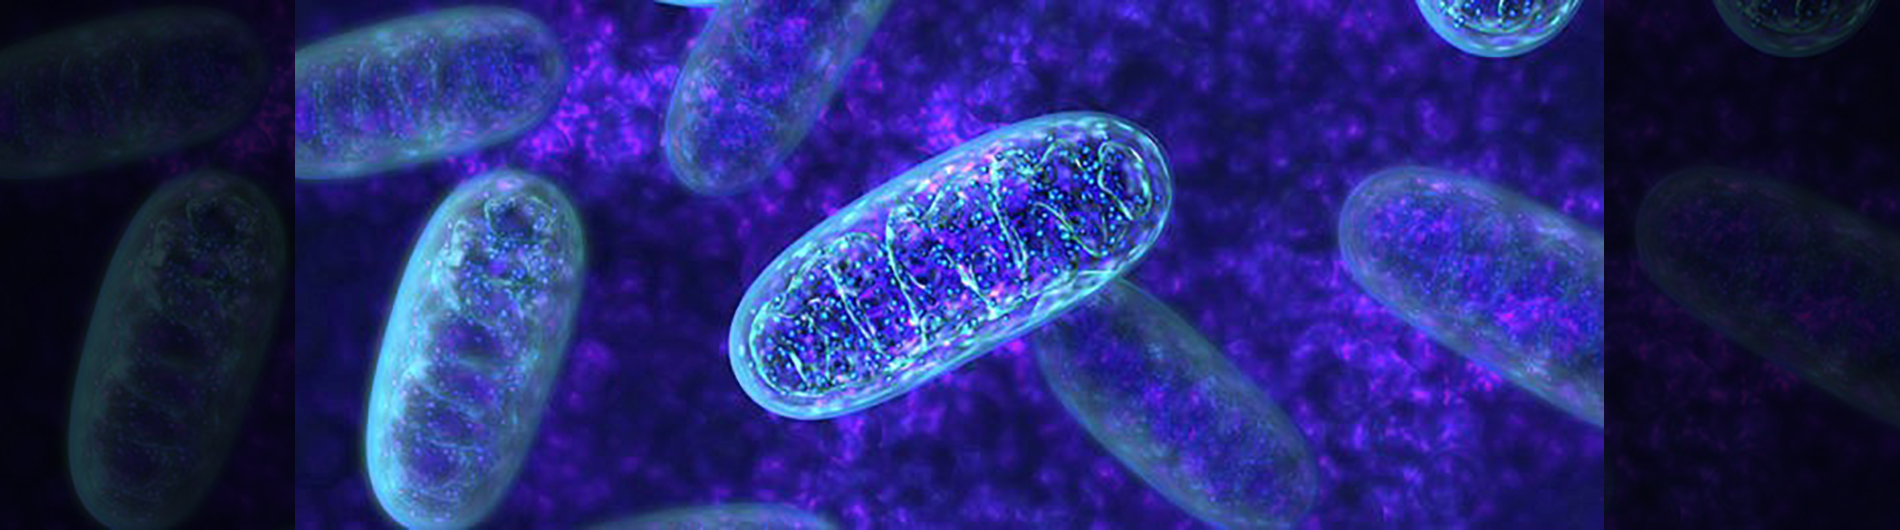 Microscopic Image of Mitochondria